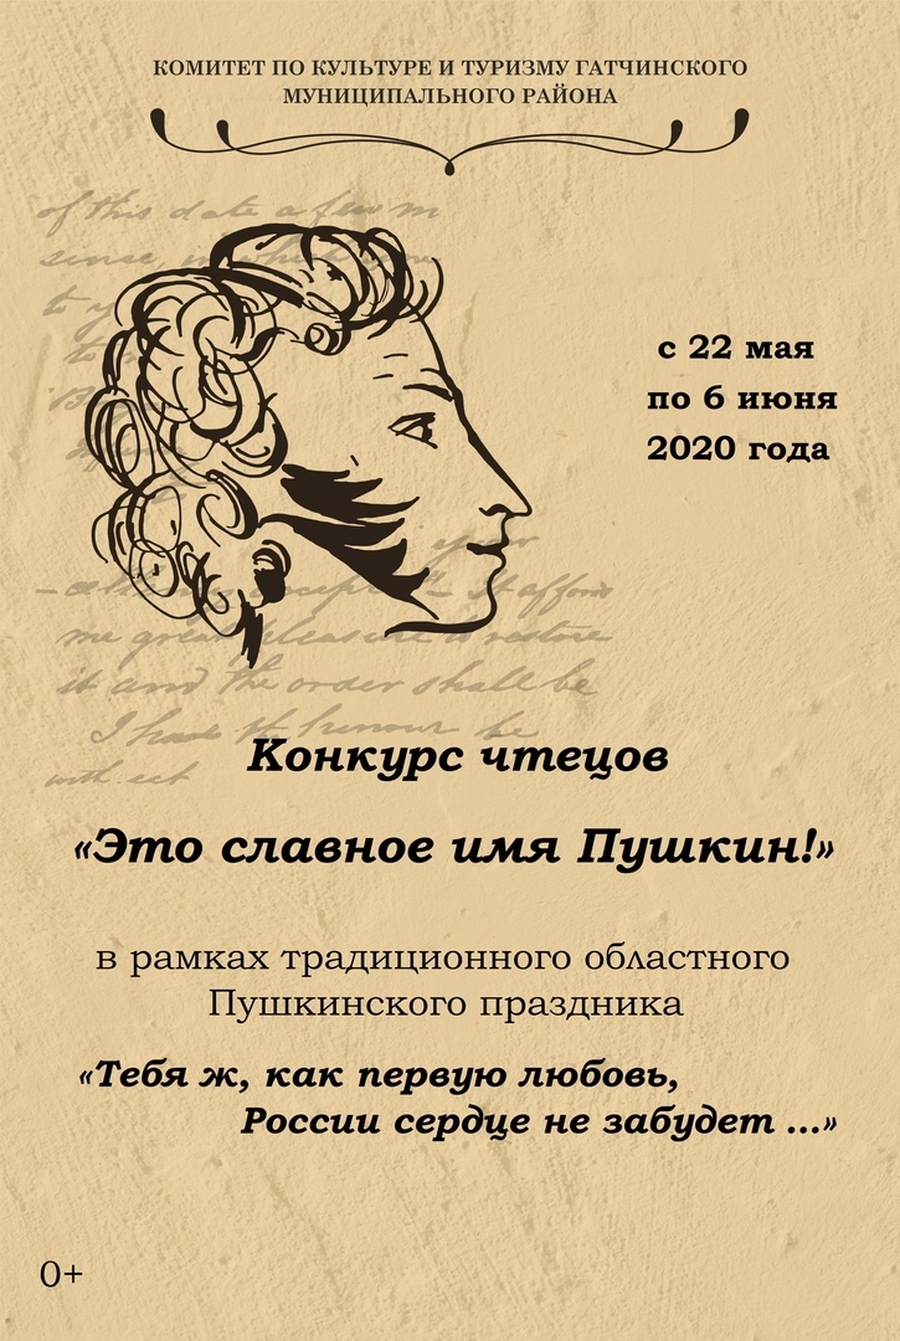 Начался дистанционный конкурс чтецов к Пушкинскому празднику  